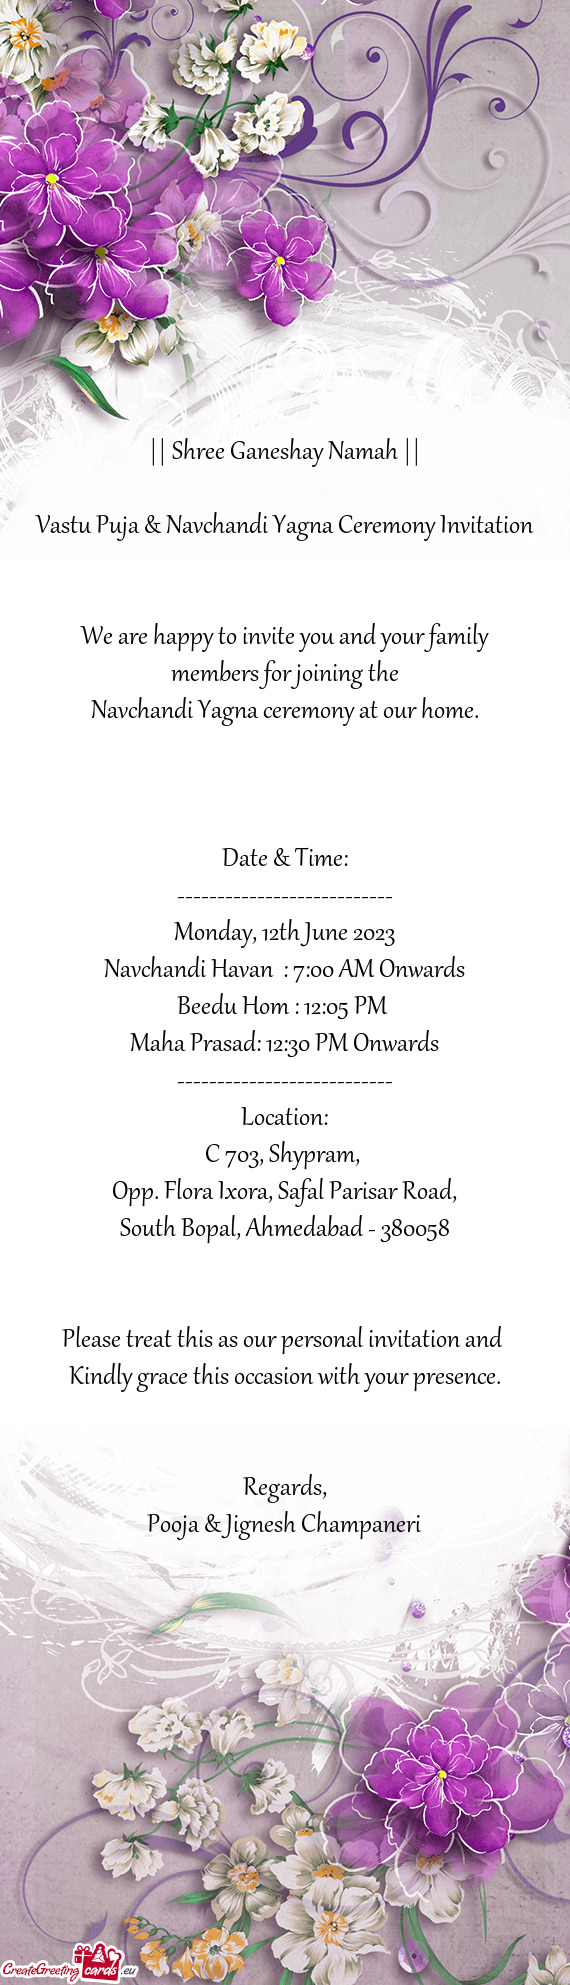 Vastu Puja & Navchandi Yagna Ceremony Invitation